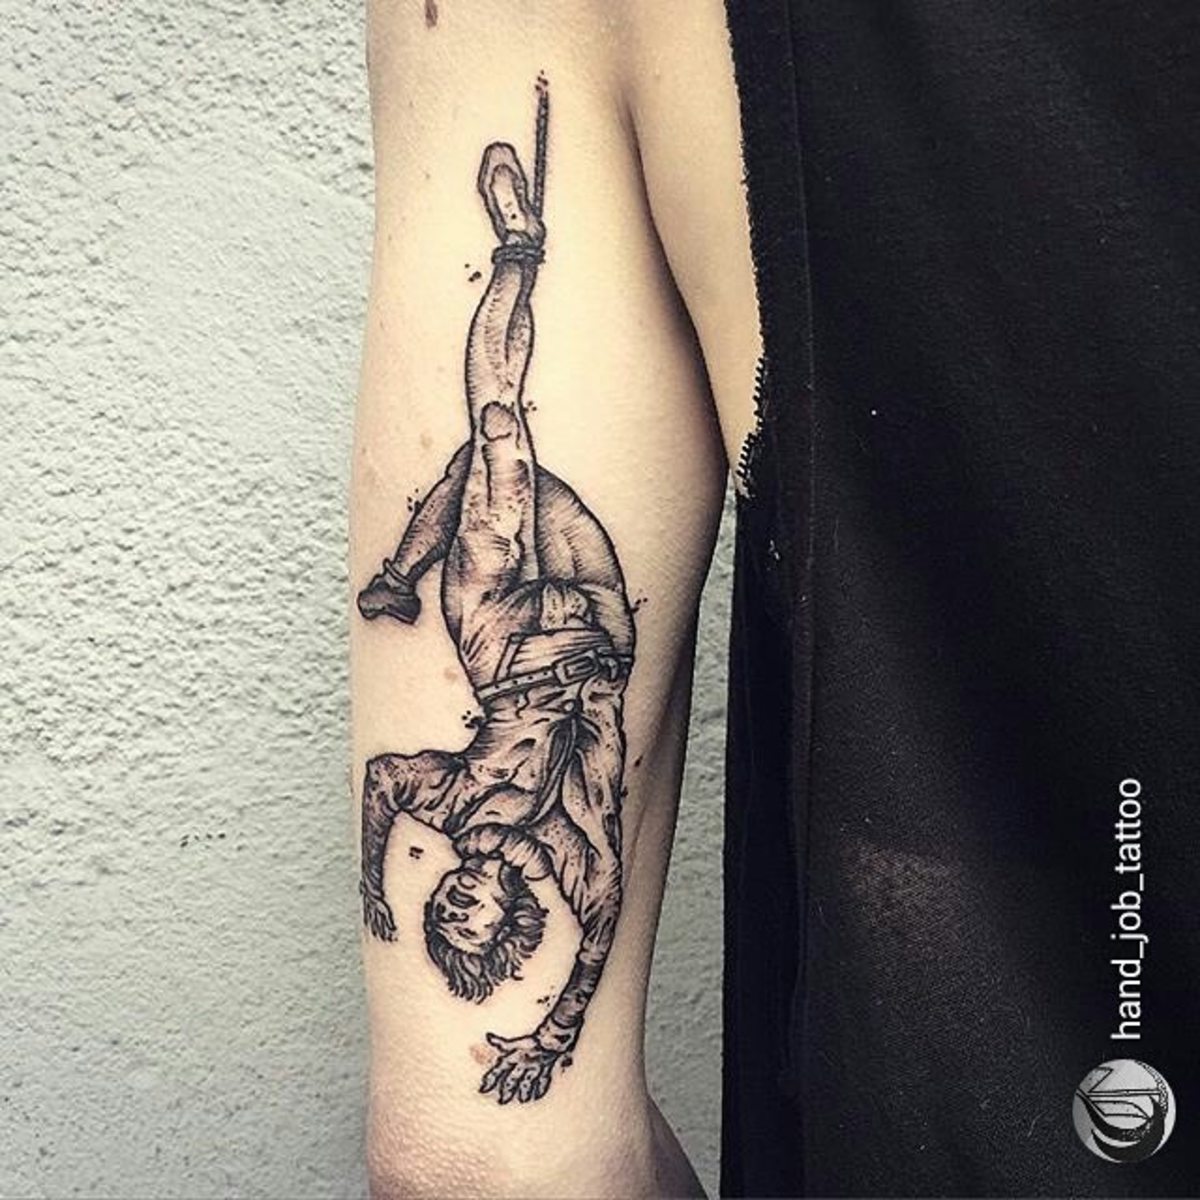 Hanged Man Tattoo av RightStuff.eu